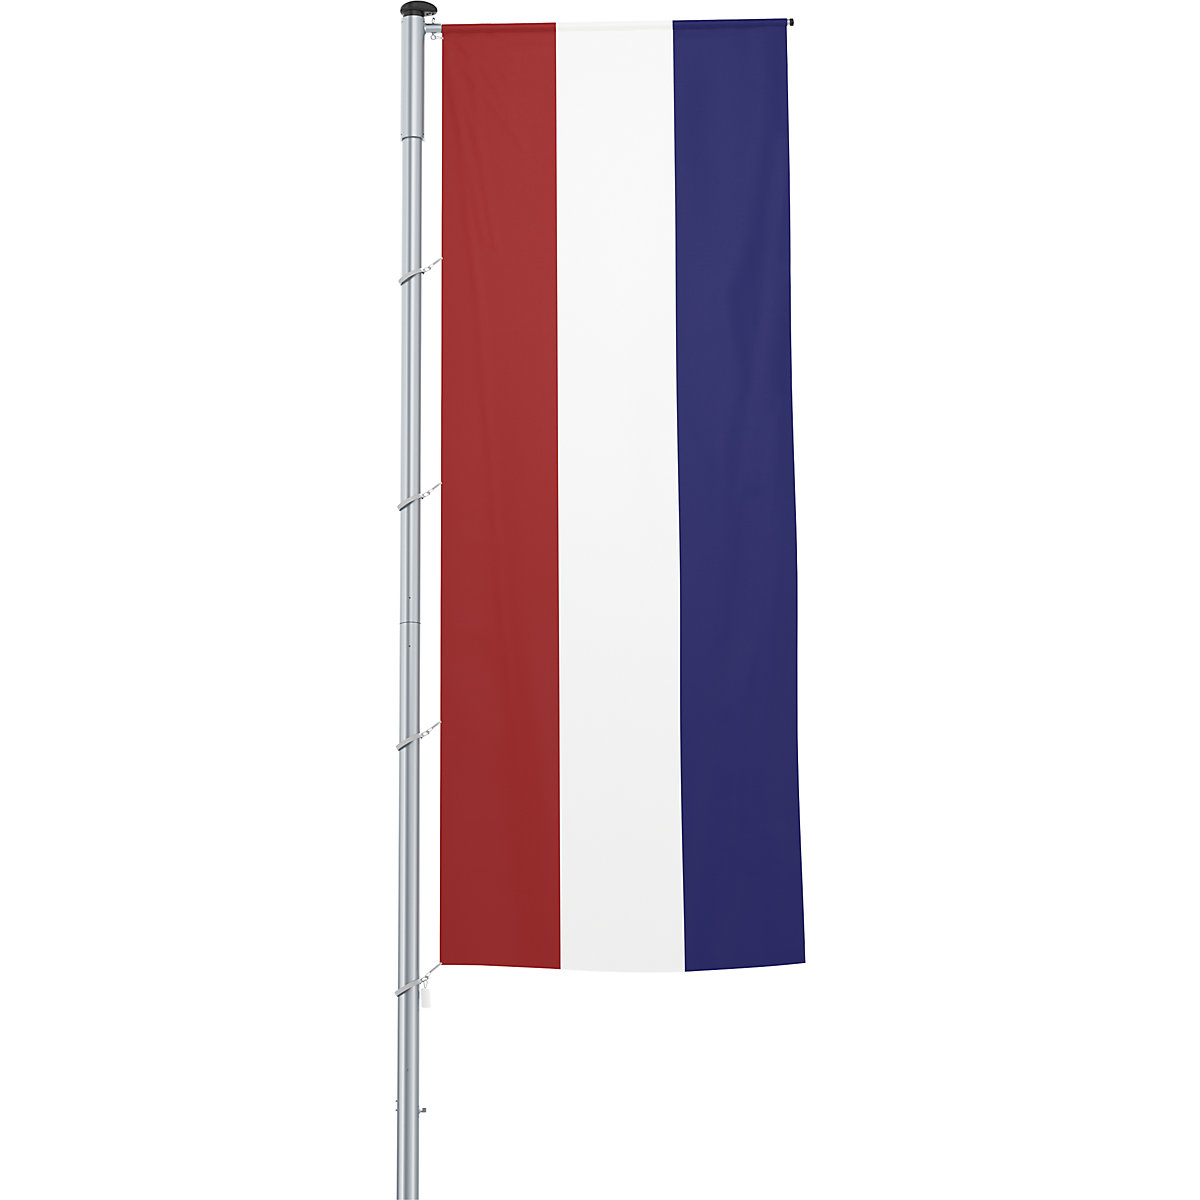 Gémes zászló/országzászló – Mannus, méret 1,2 x 3 m, Hollandia-24